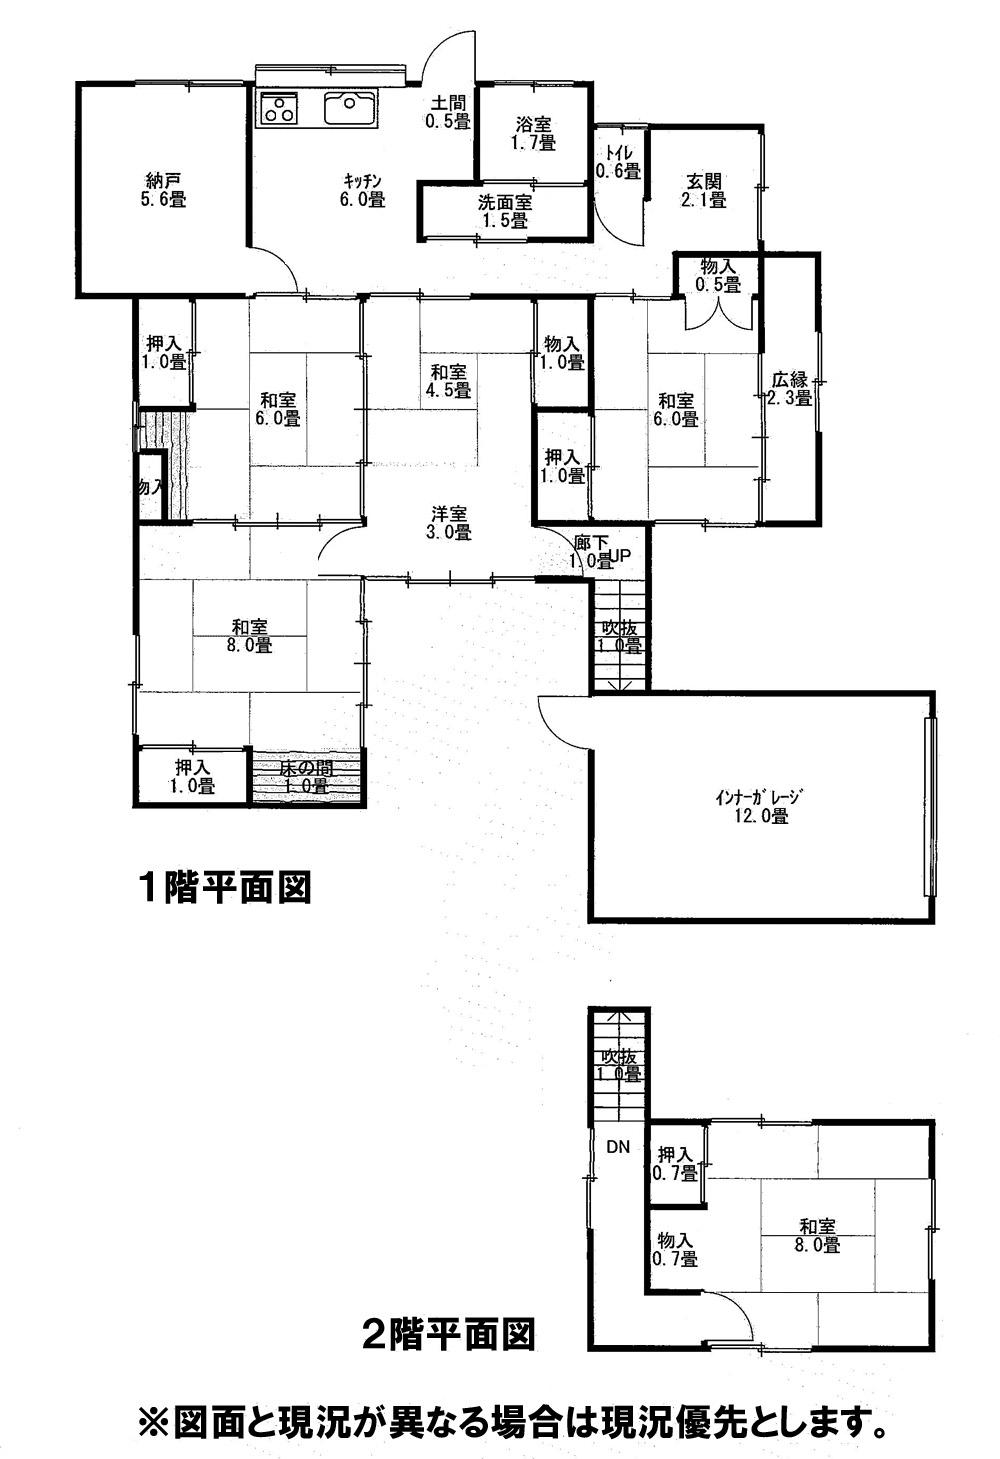 Floor plan. 2.9 million yen, 5DK, Land area 204.73 sq m , Building area 131.6 sq m 5DK